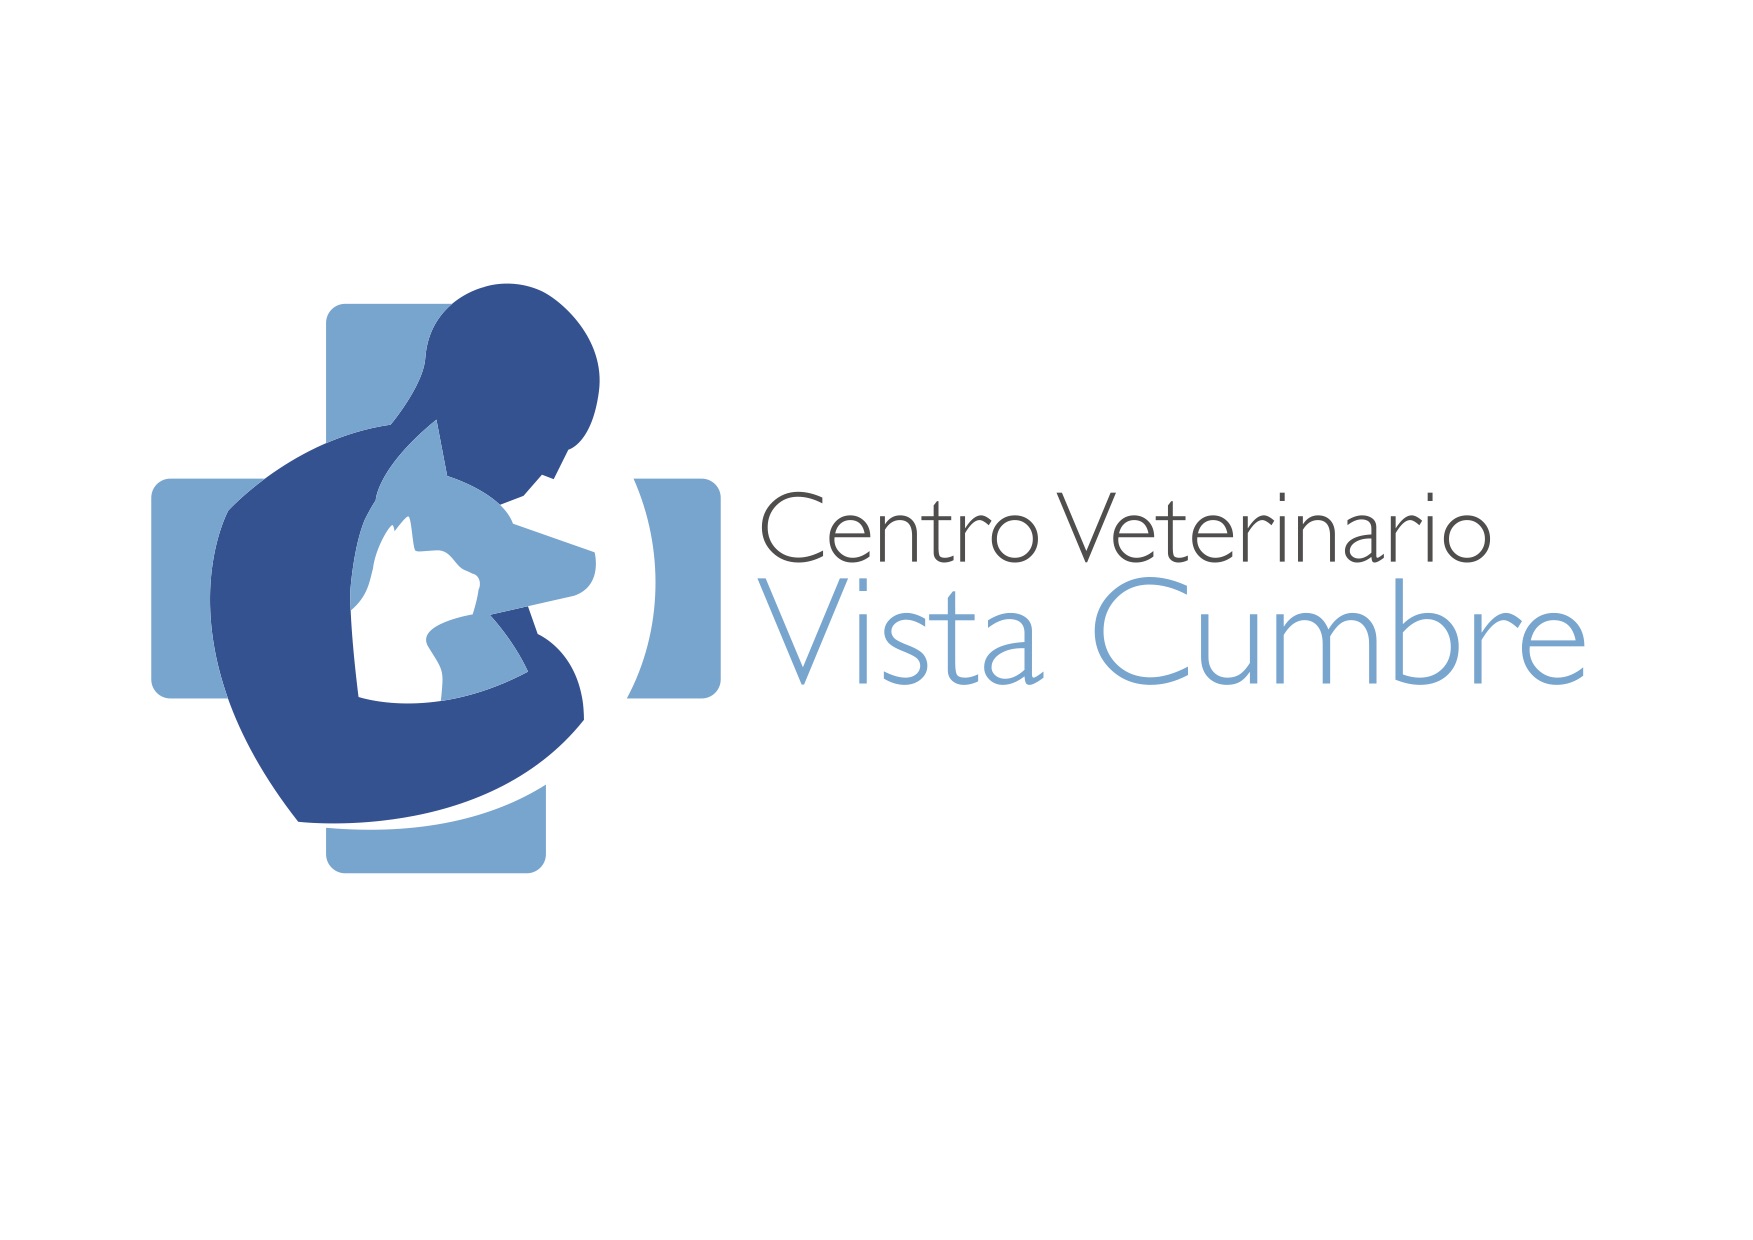 Centro Veterinario Vista Cumbre Las Palmas